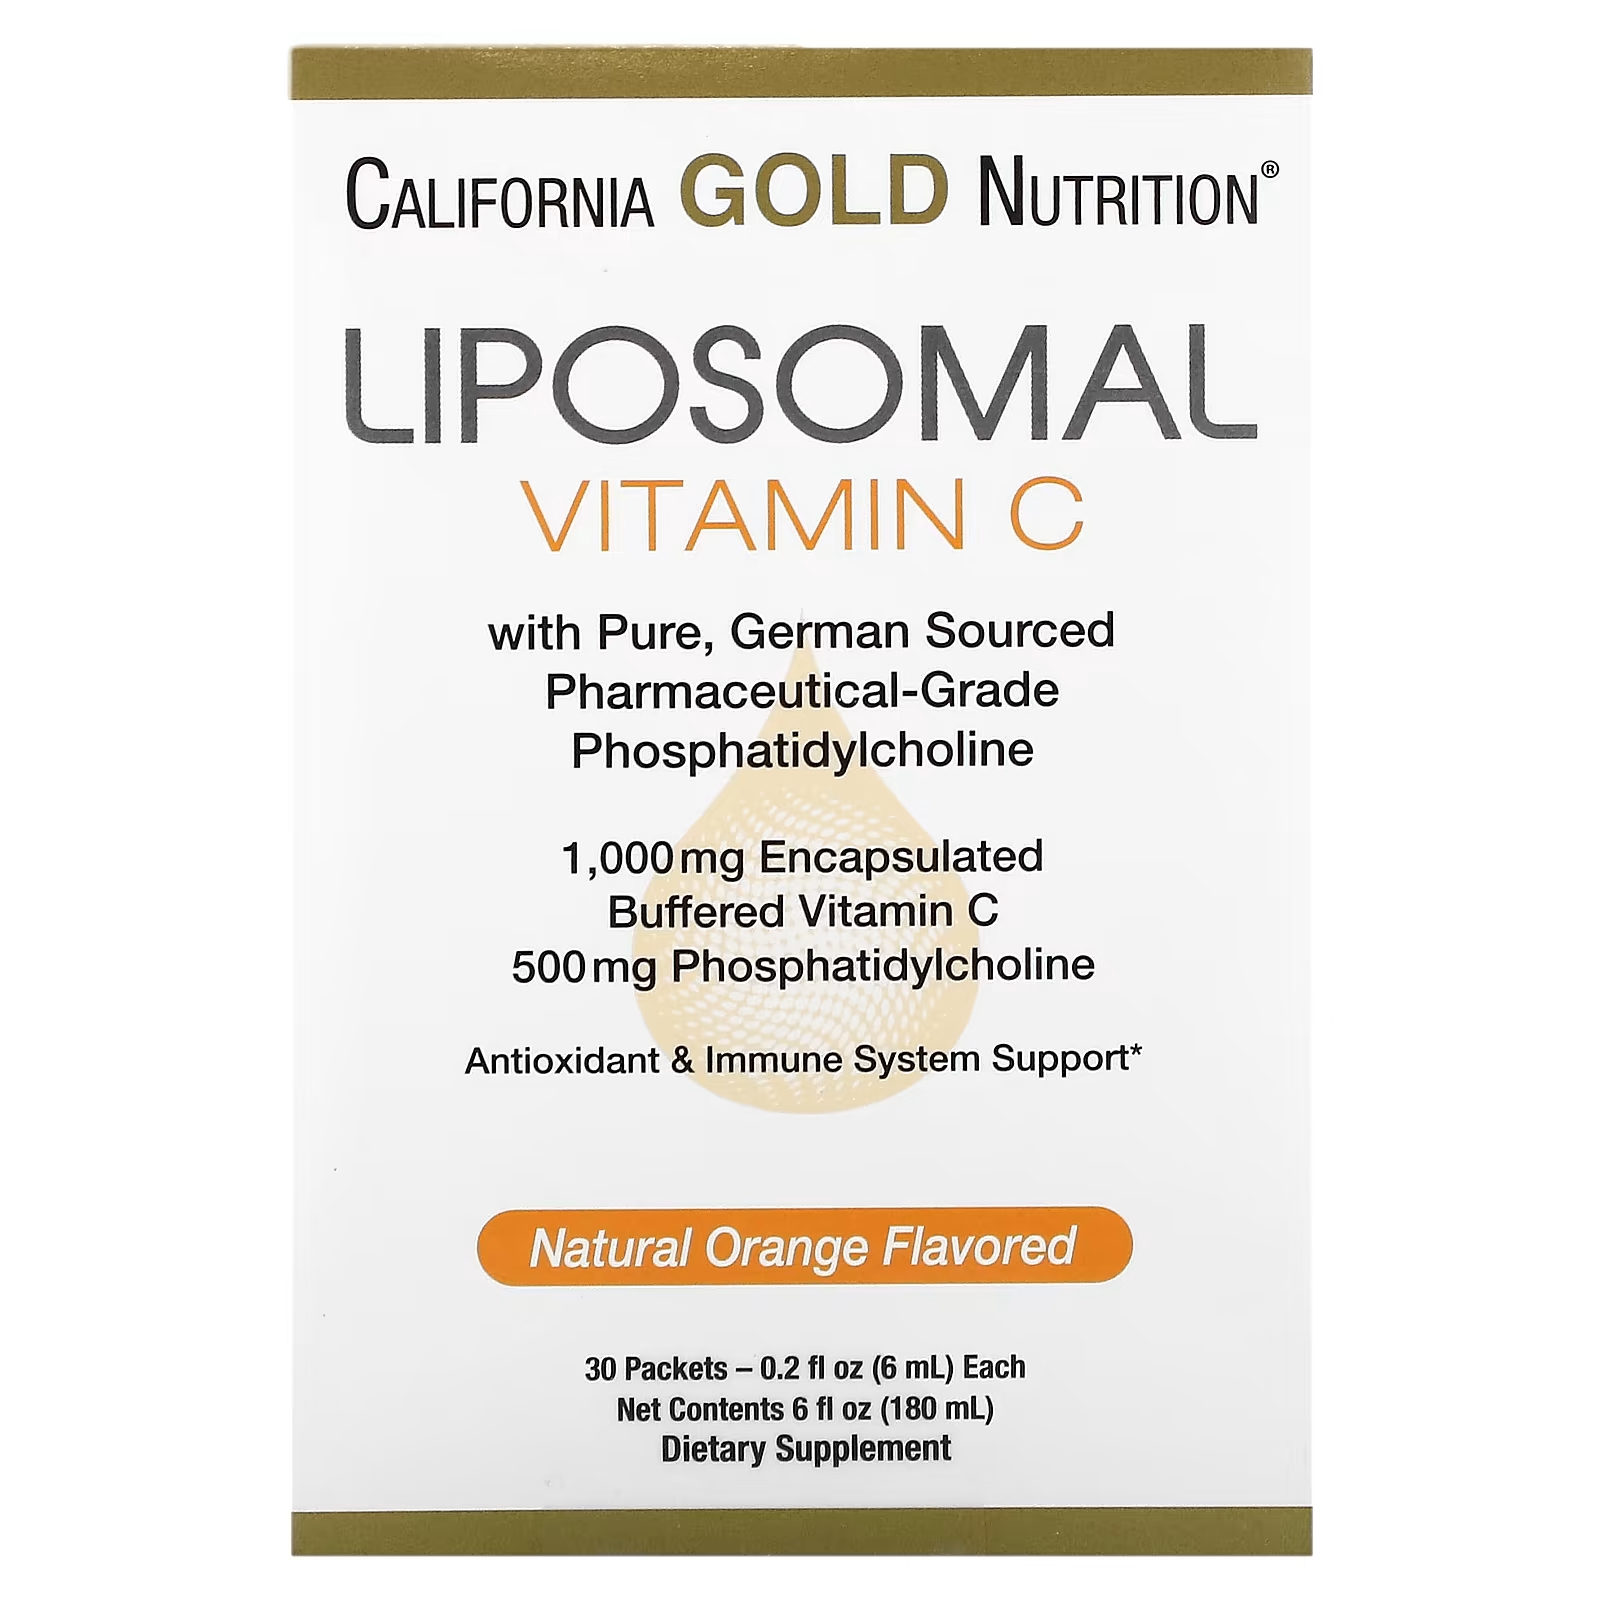 Липосомальный витамин С от California Gold Nutrition, 1000 мг, 30 пакетов по 0,2 жидких унции (6 мл) каждый